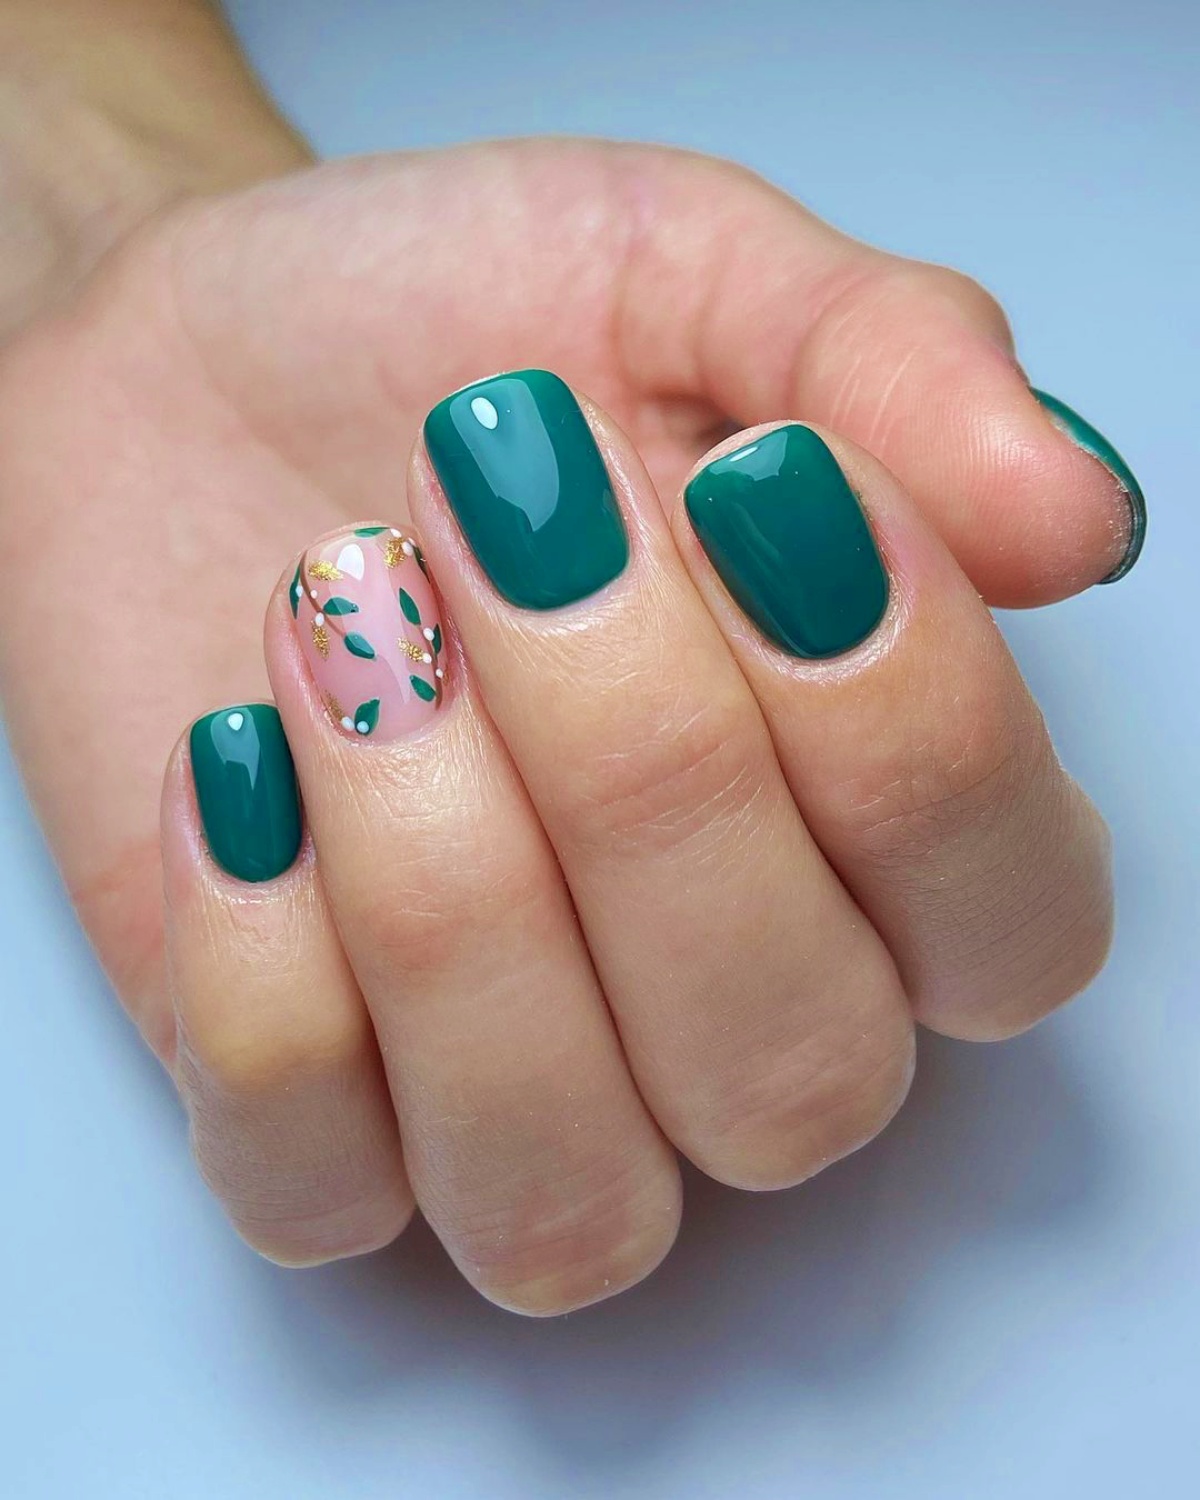 manicure per unghie corte in gel verde lucido